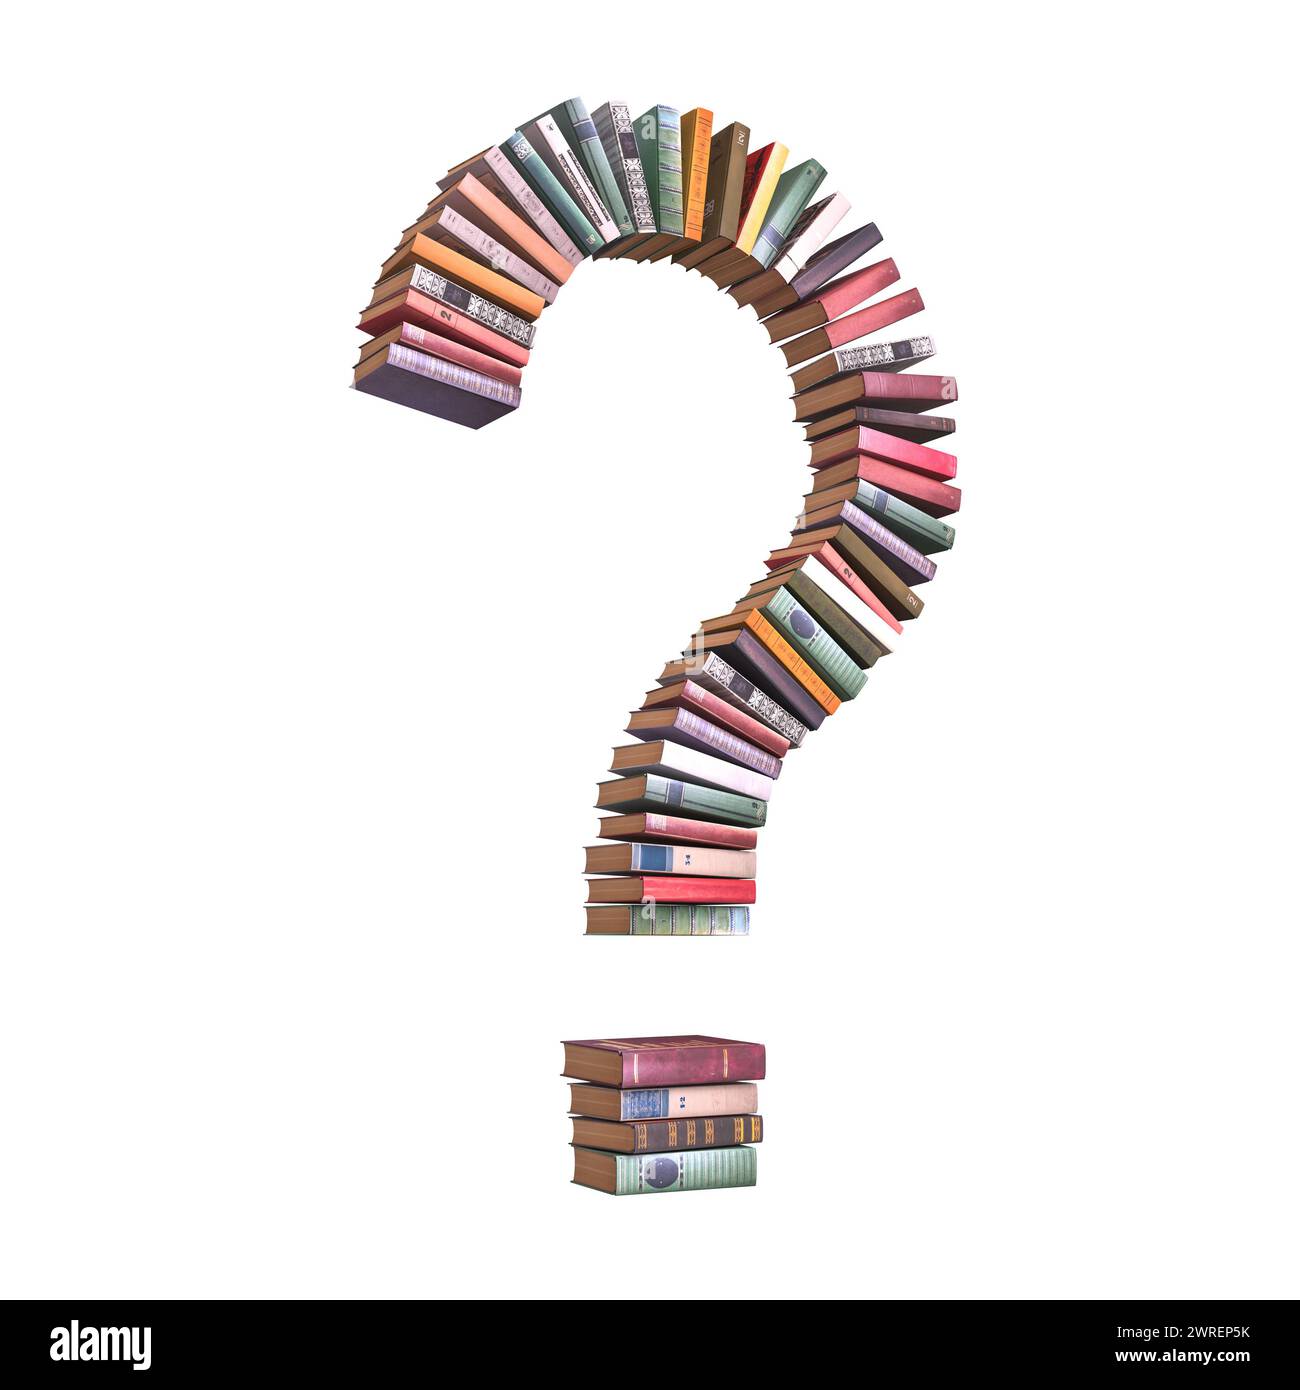 Kreative Darstellung verschiedener Bücher, die ein Fragezeichen bilden und die Untersuchung und Bildung symbolisieren. 3D-Rendering Stockfoto